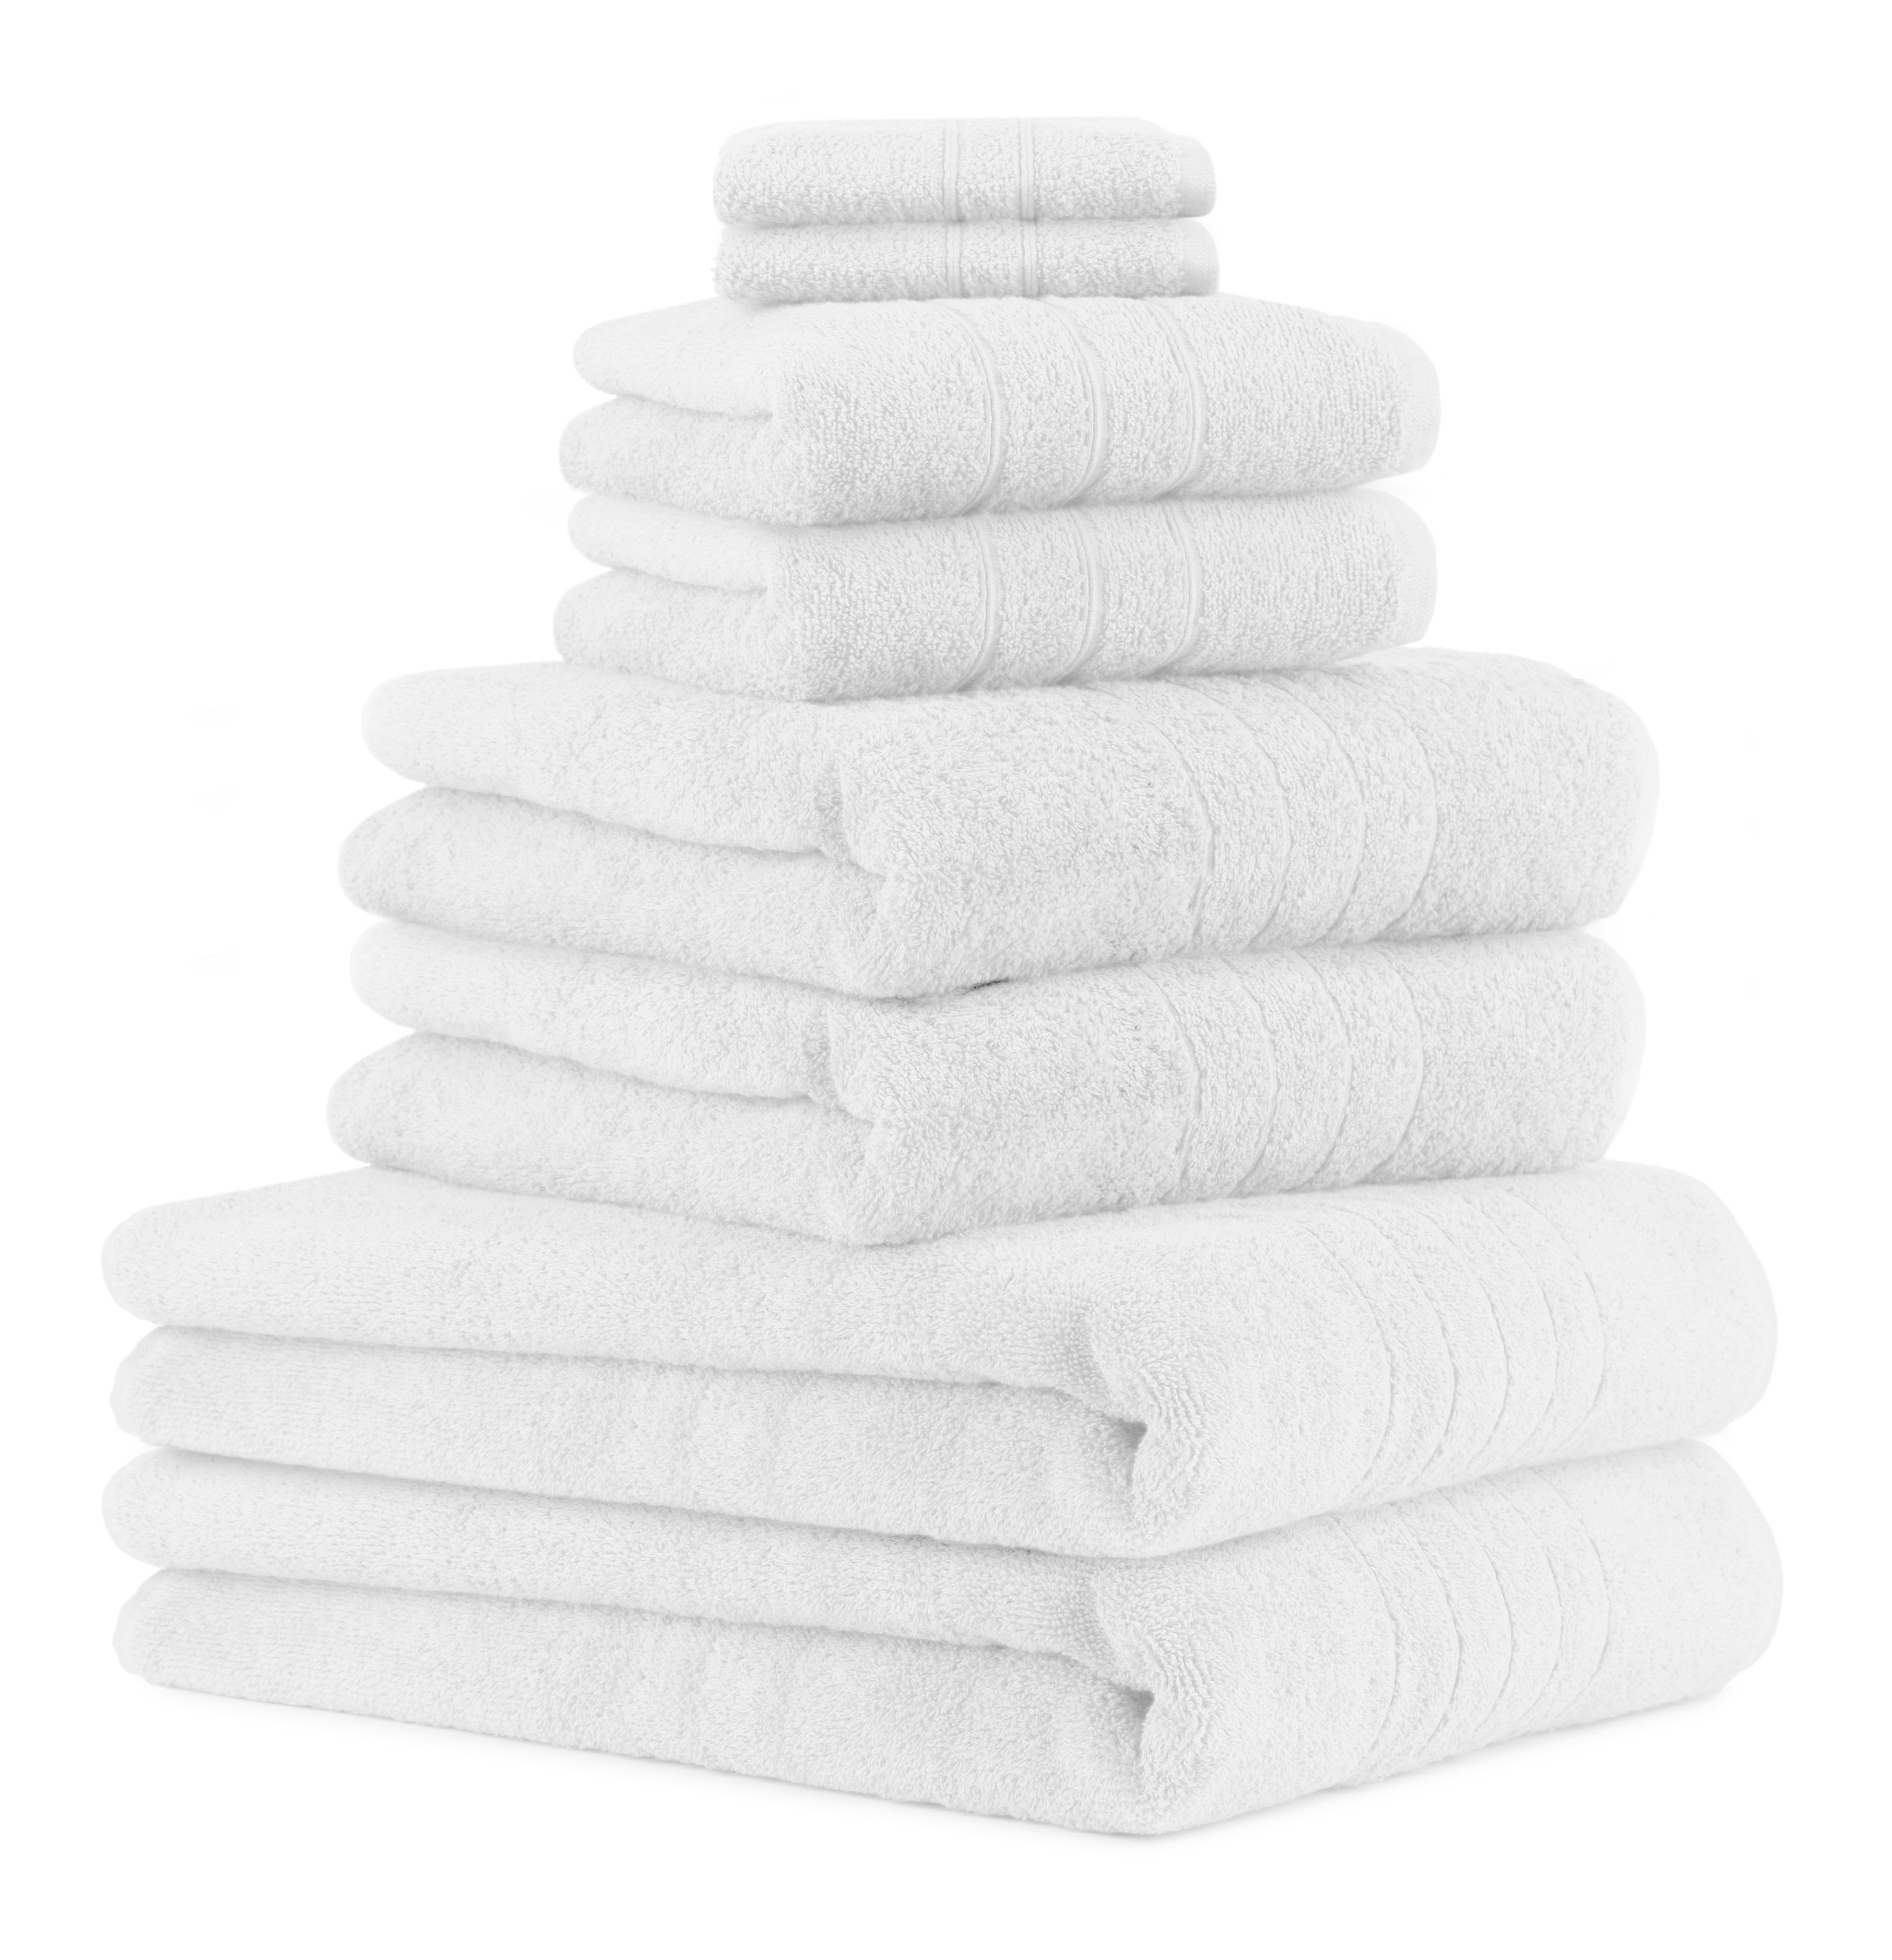 Betz Handtuch Set 8-TLG Handtuch-Set Deluxe 100% Baumwolle 2 Badetücher 2 Duschtücher 2 Handtücher 2 Seiftücher, 100% Baumwolle, (8-tlg) weiß